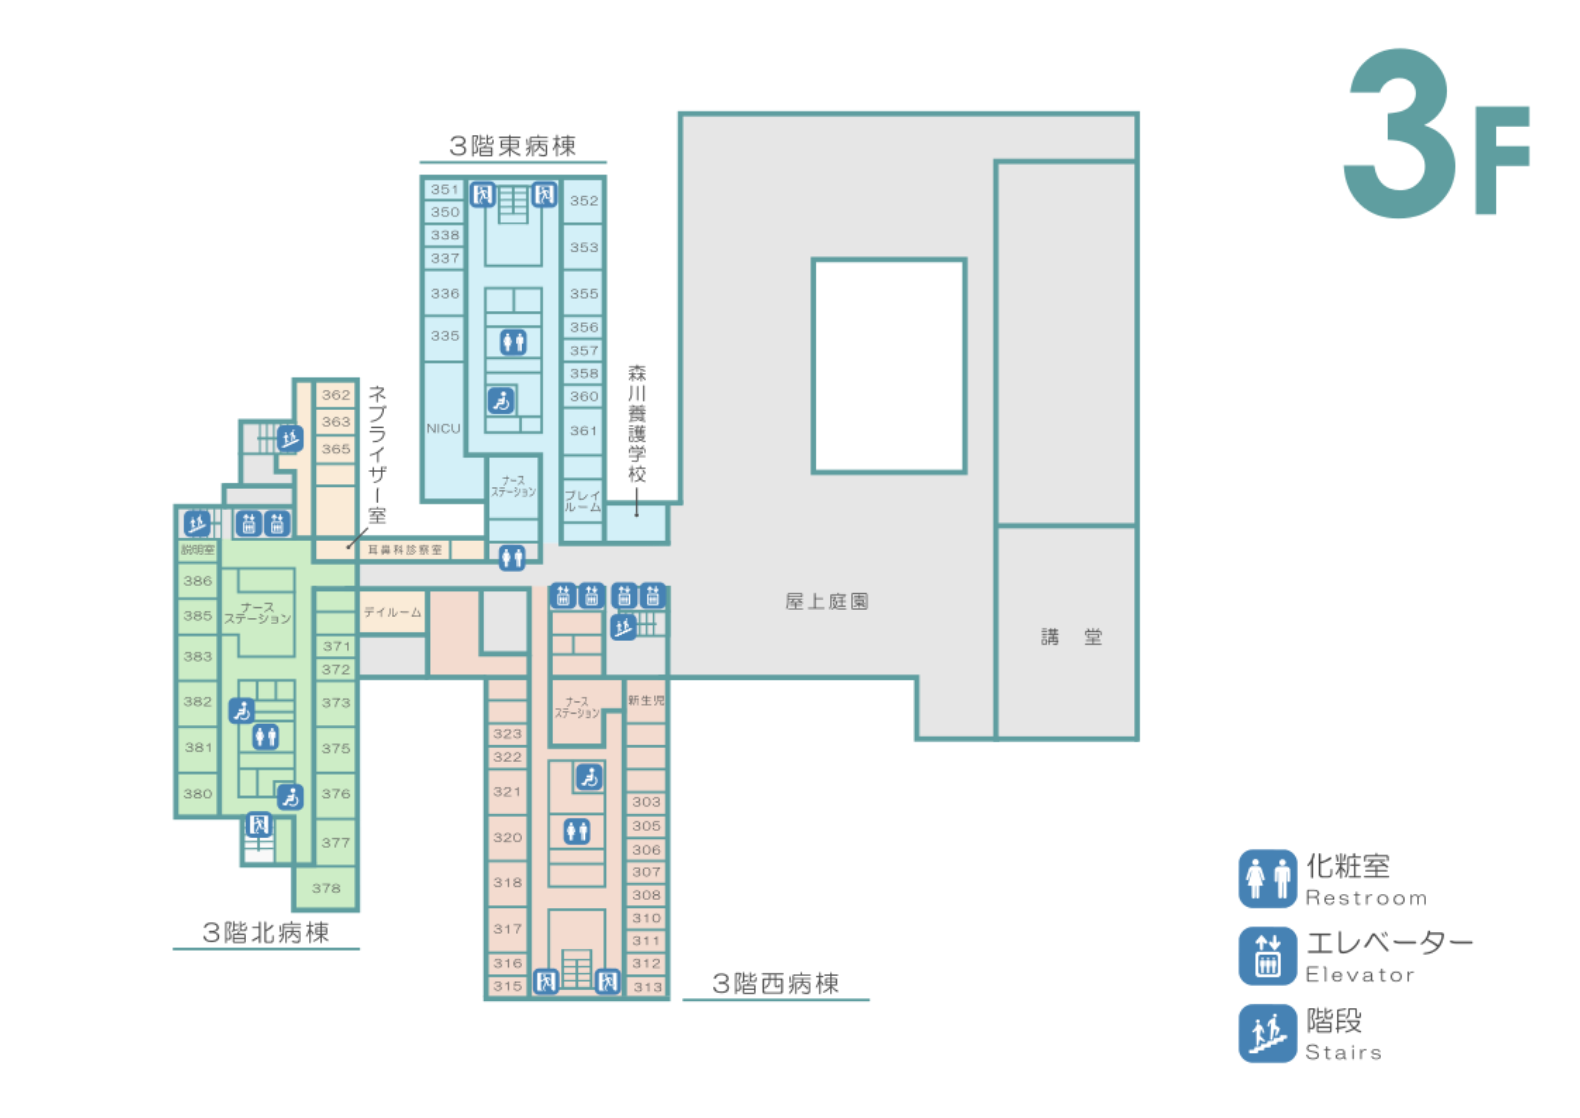 3階　屋上庭園 / 3階北病棟 / 3階東病棟 / NICU /  3階西病棟